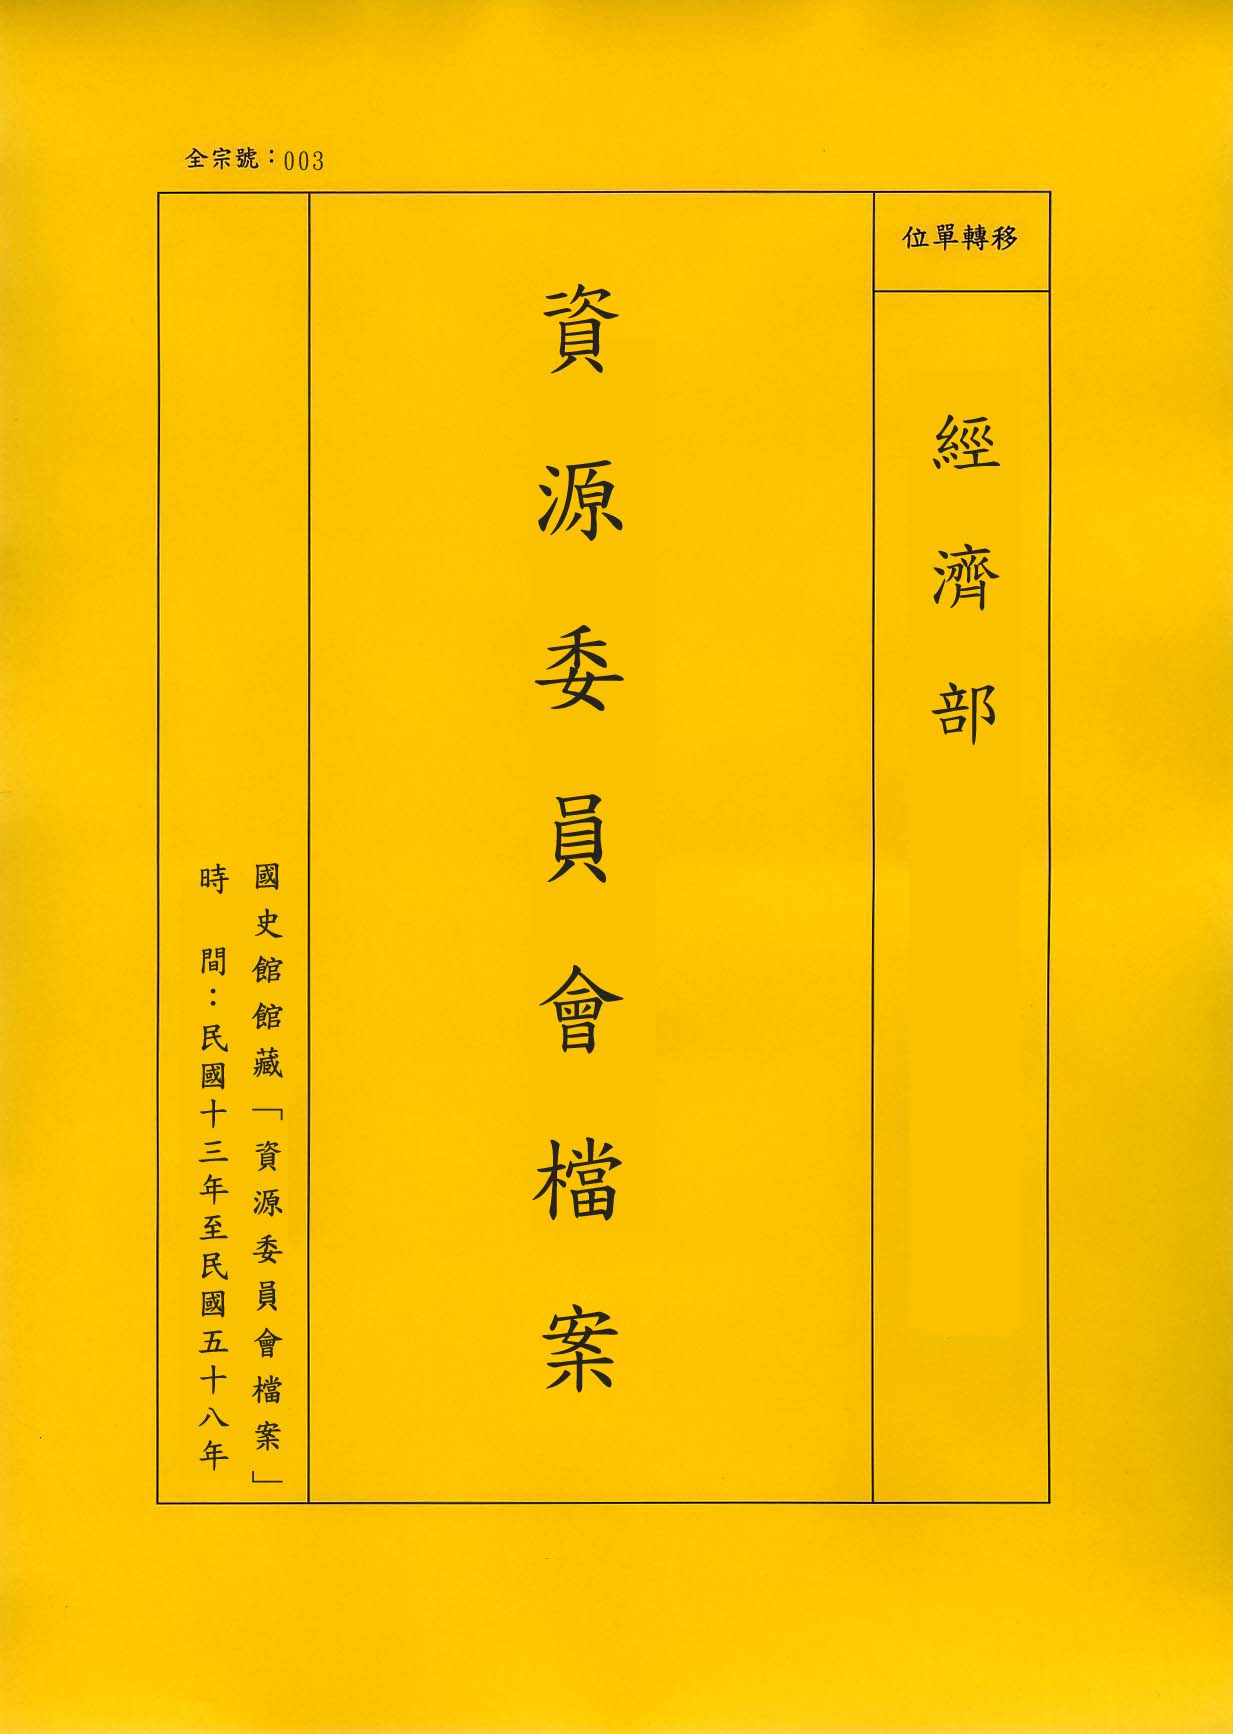 卷名:整理漂漿工廠調查表─上海(三)(003-010306-0180)